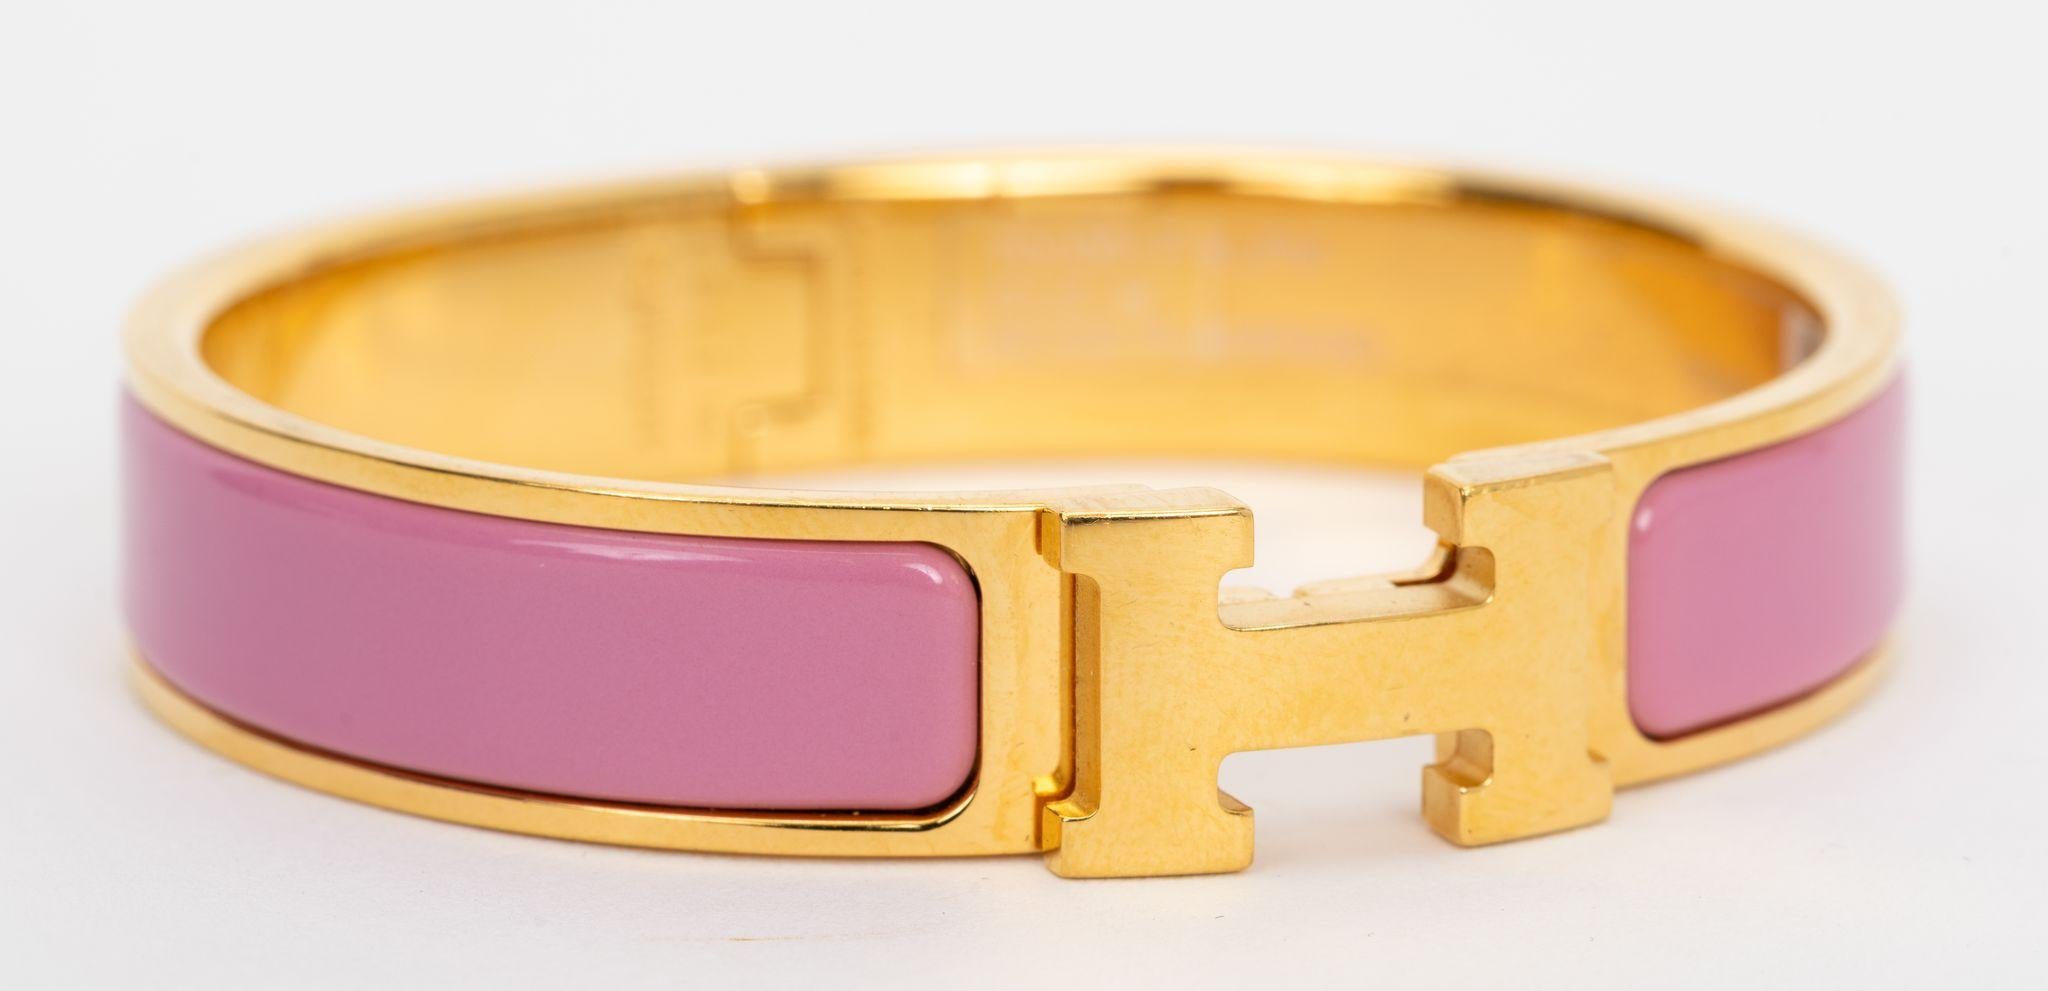 Das Hermes Clic Clac H, schmales Armband, aus rosa Flamingo-Emaille mit vergoldeten Beschlägen.
Größe PM, ungetragener Neuzustand, wird mit Samtbeutel geliefert.